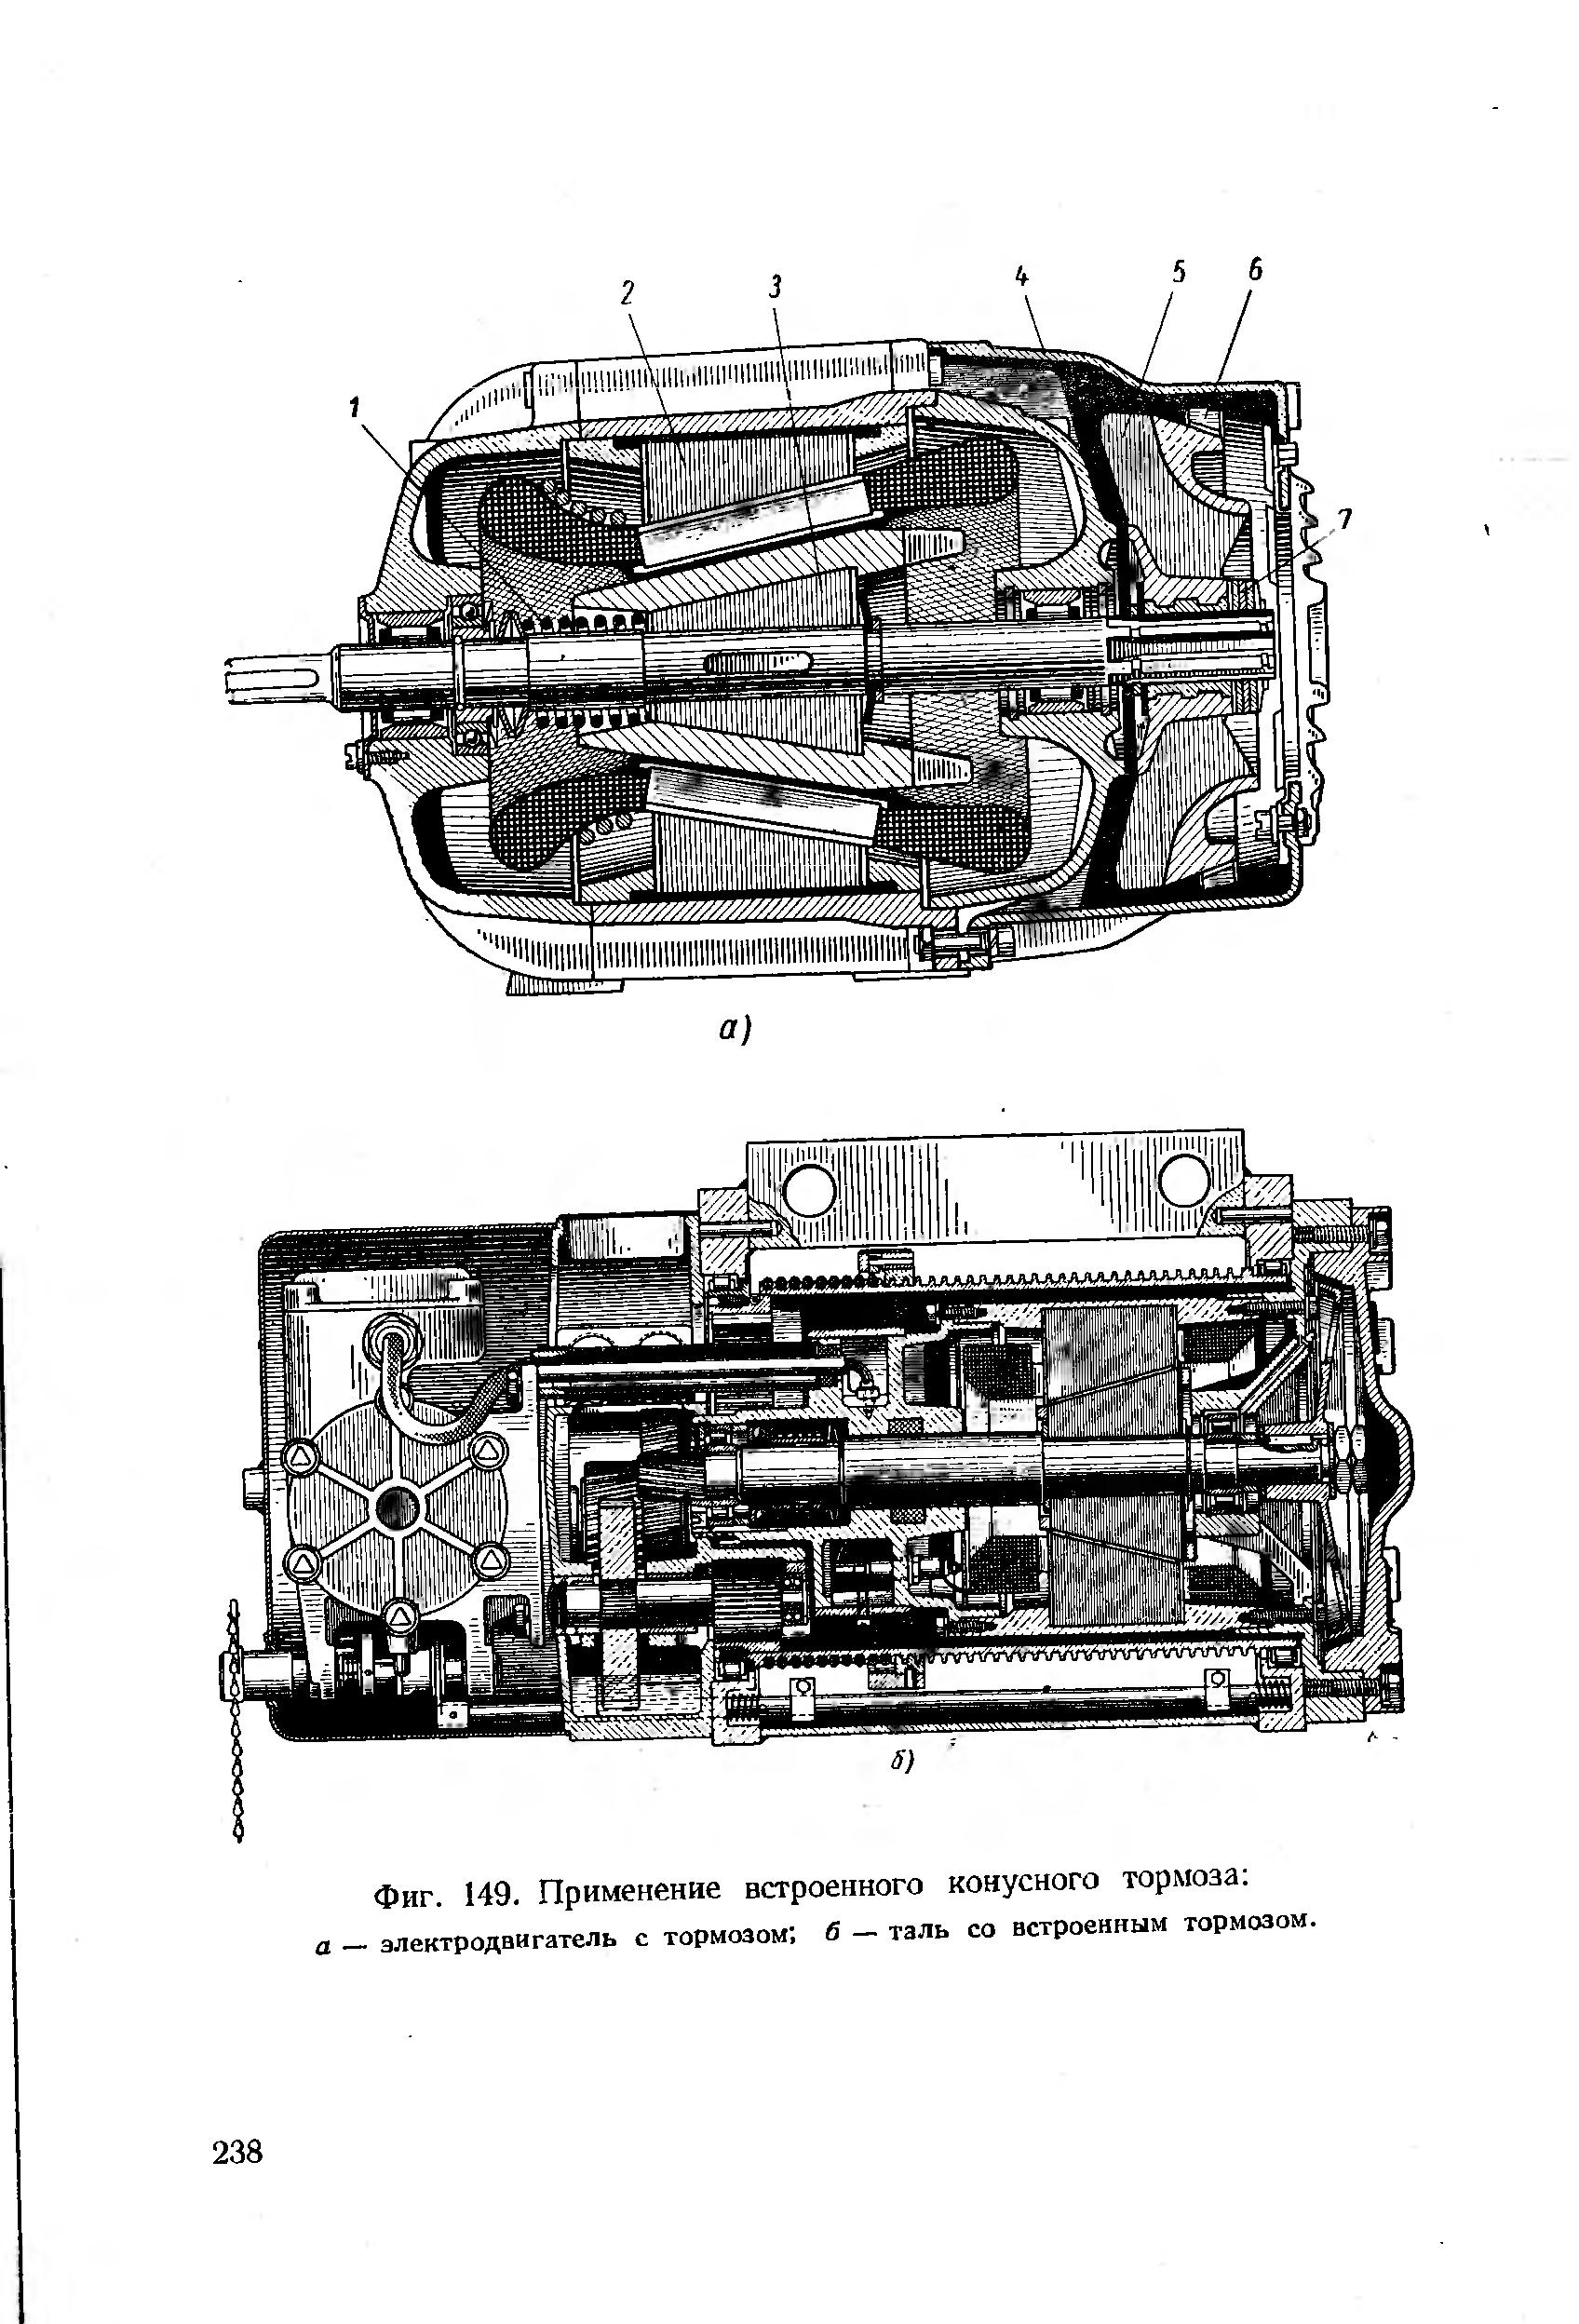 Фиг. 149. Применение встроенного конусного тормоза а — электродвигатель с тормозом б — таль со встроенным тормозом.
